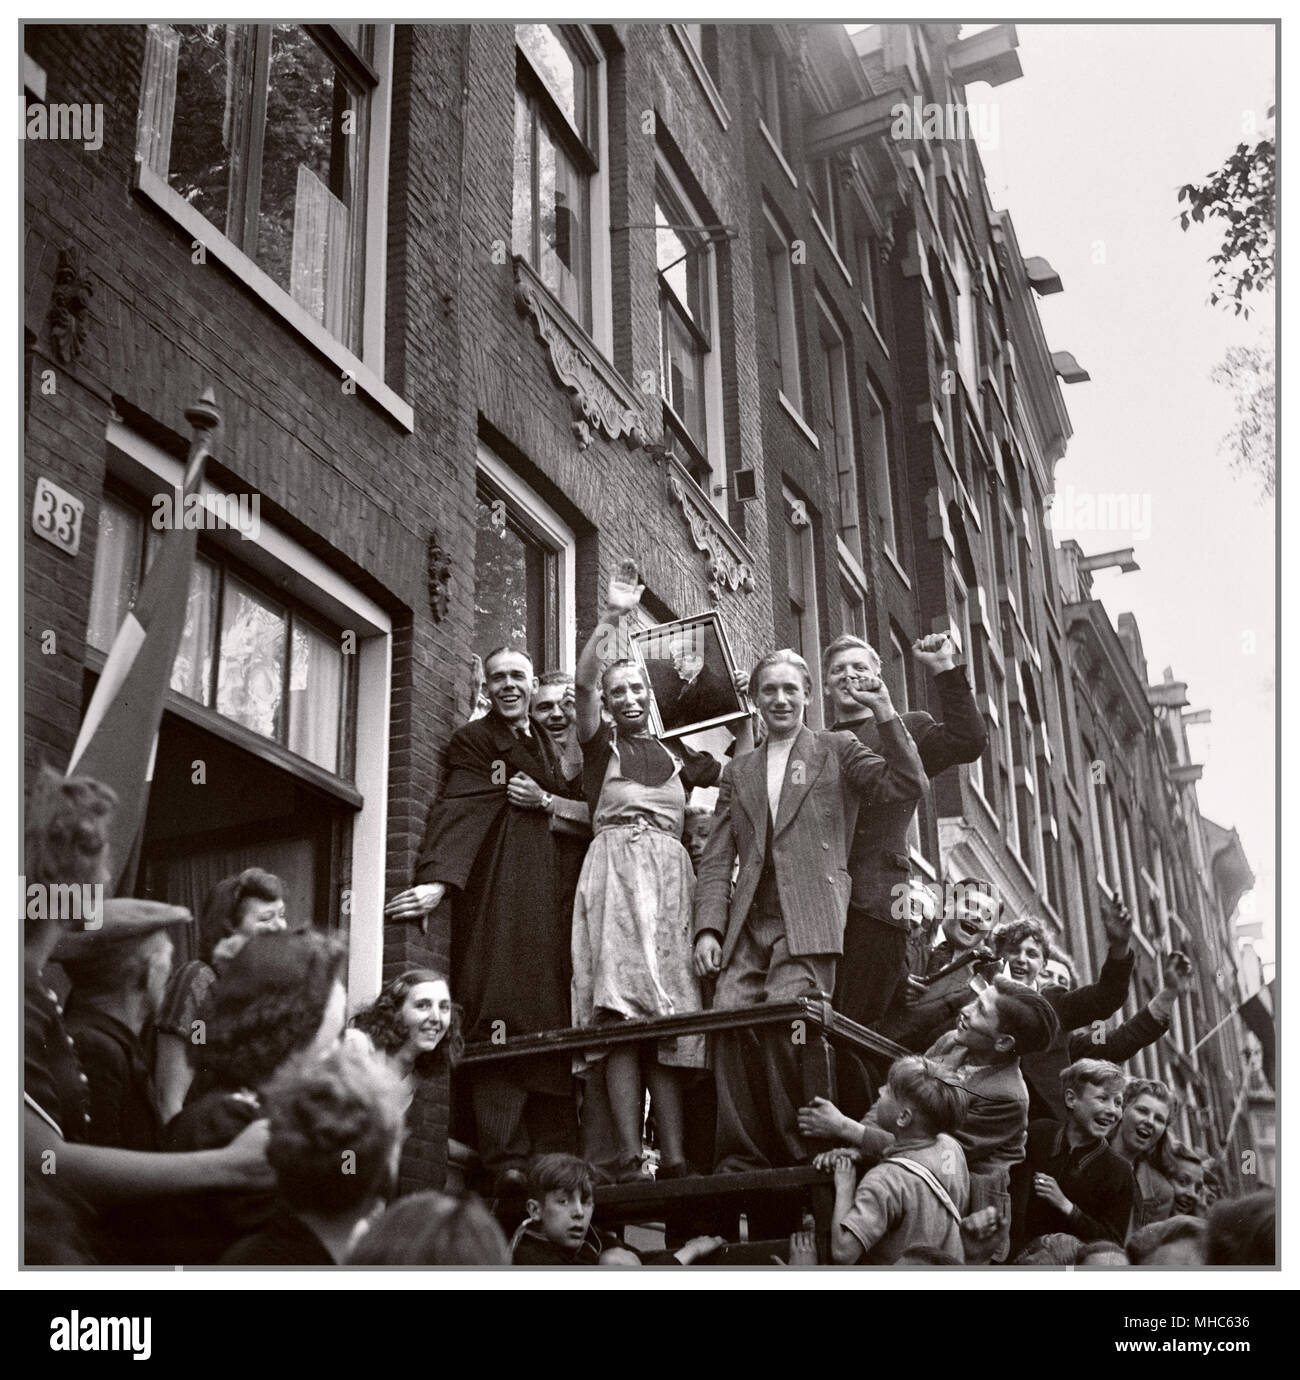 Een kaalgeschoren vrouw, verdacht van collaboratie, wordt publiekelijk gedwongen het portret van Hitler te groeten. Scheveningen (Nederland), mei 1945. Vrouwen die omgingen met Duitse soldaten werden wel 'moffenmeid' of 'moffenhoer' genoemd. DateMay 1945 Stock Photo